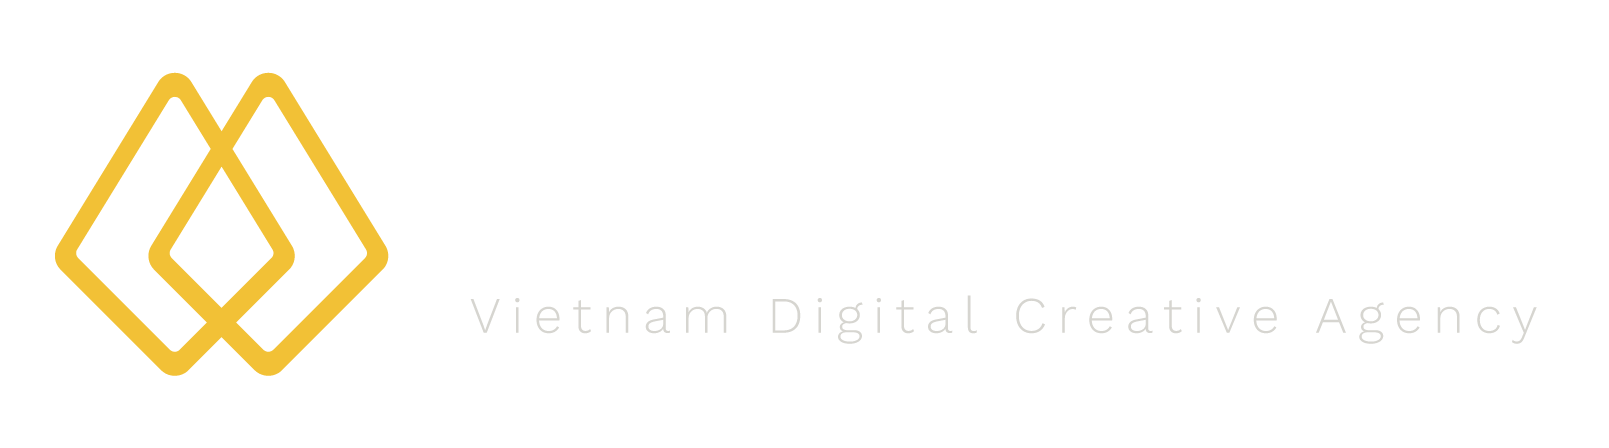 logo-hy-genius-white